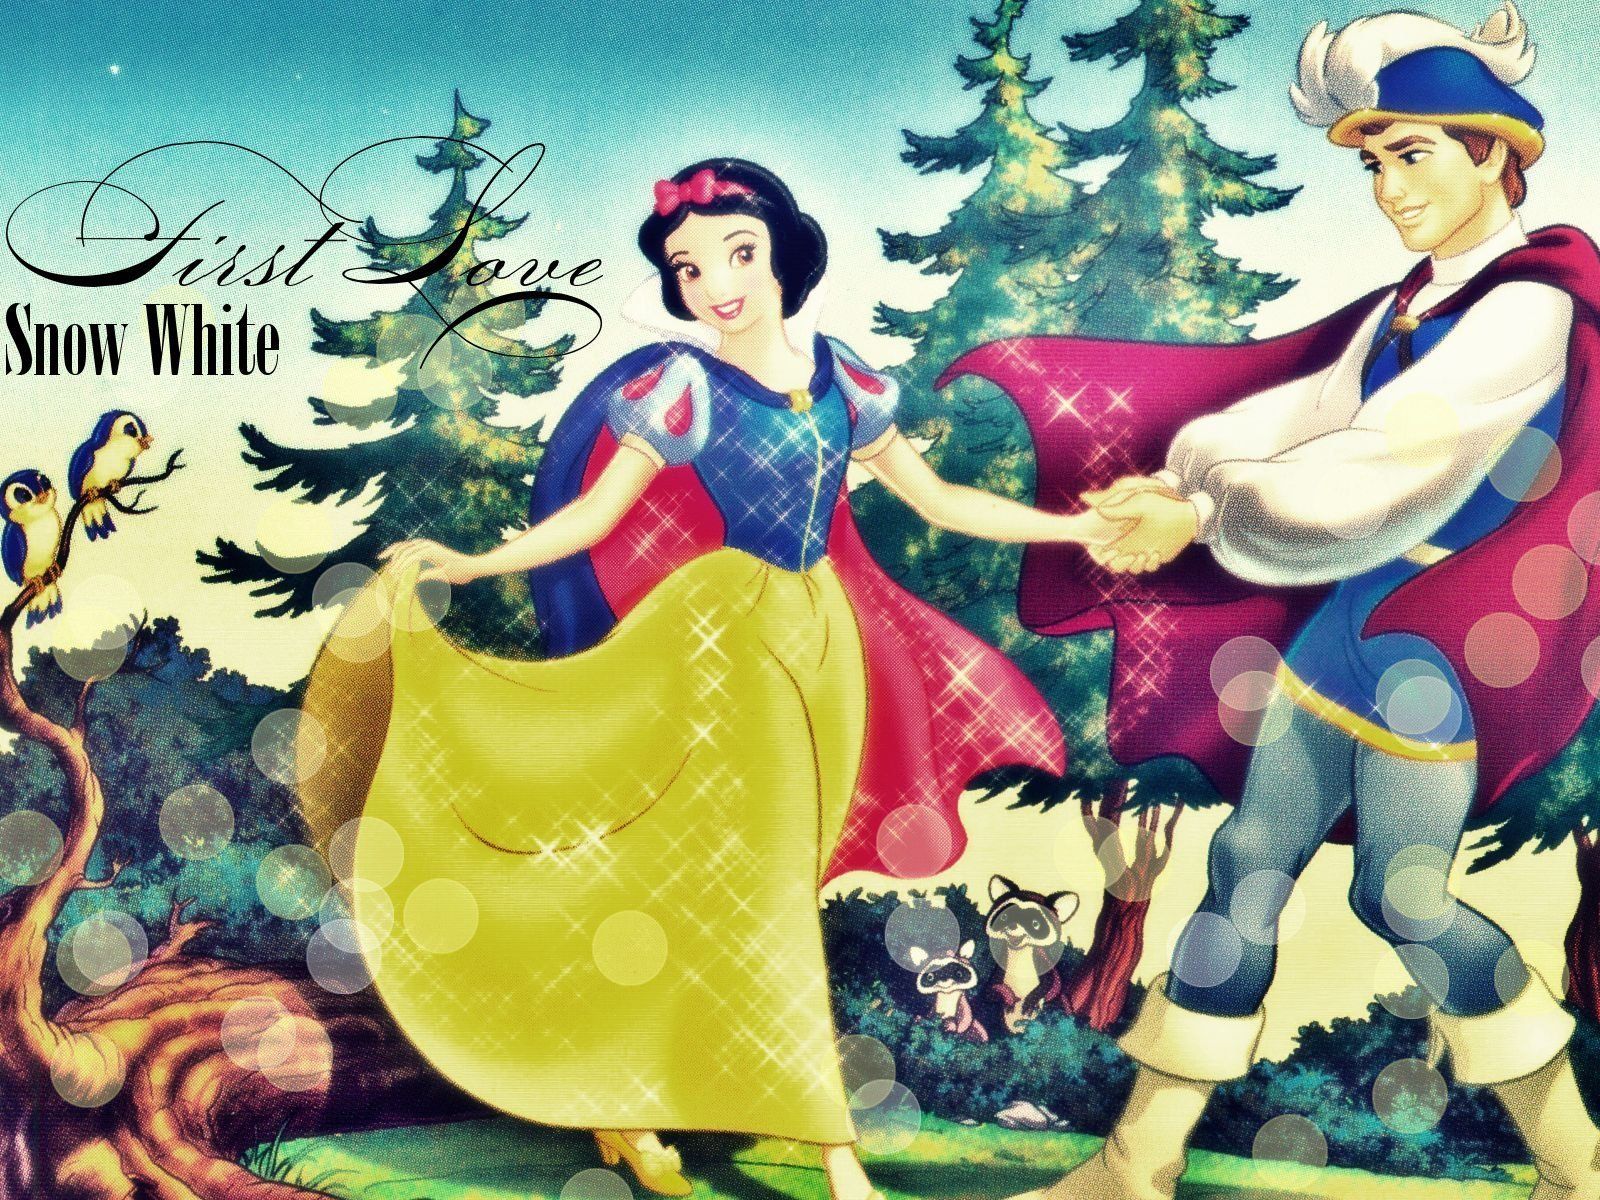 Disney Princess Snow White Wallpaper Image para iPhone - Dibujos animados